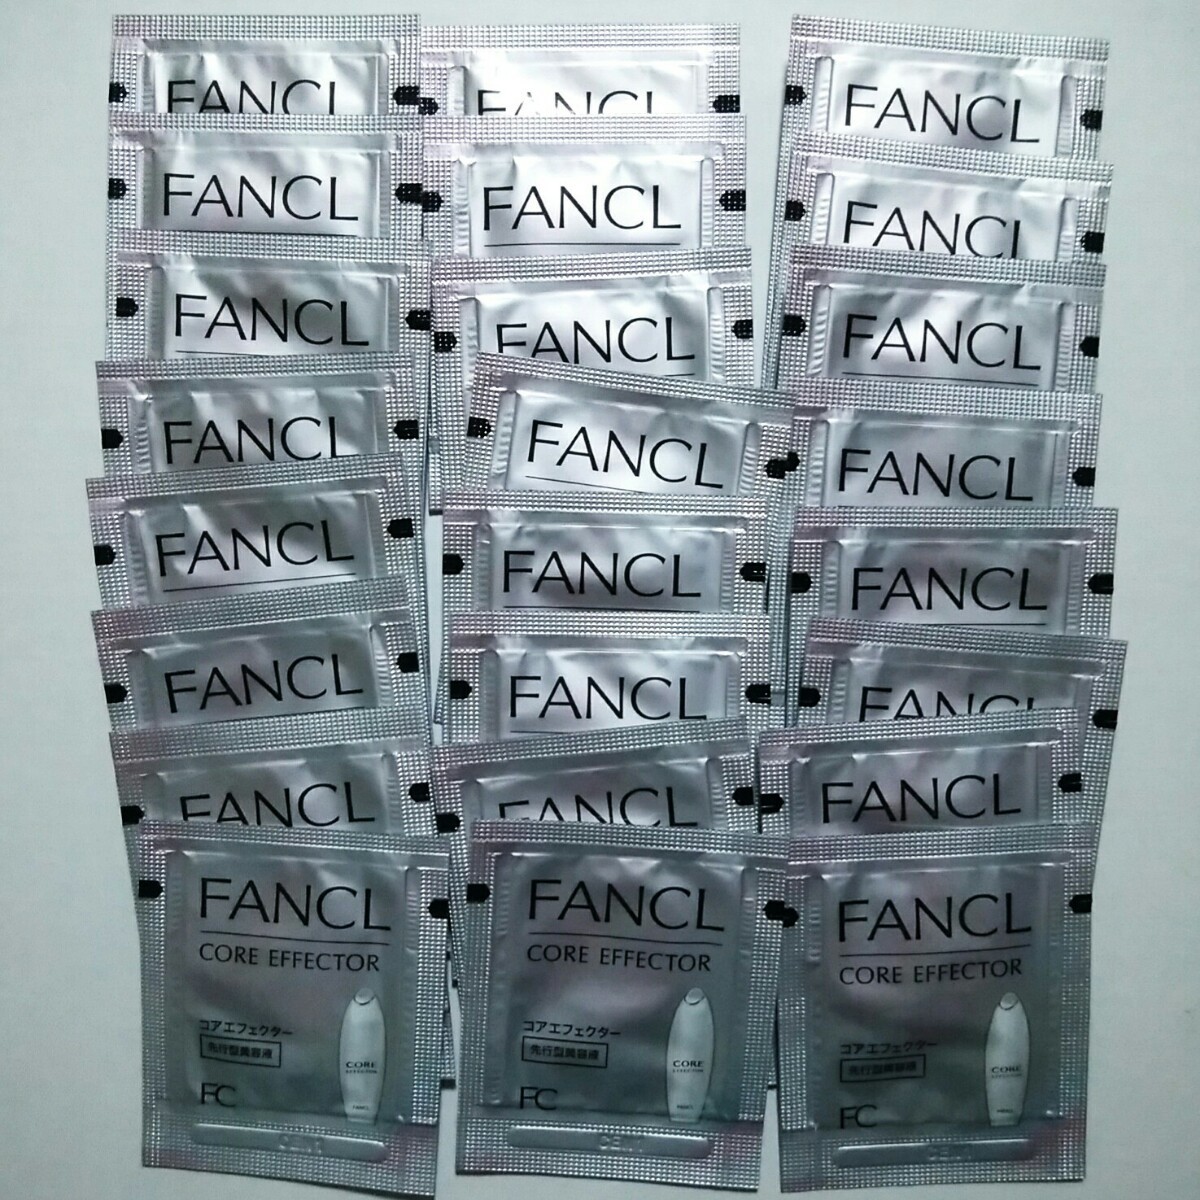 ファンケル コアエフェクター サンプル 24包セット エイジングケア 美容液 FANCL 試供品